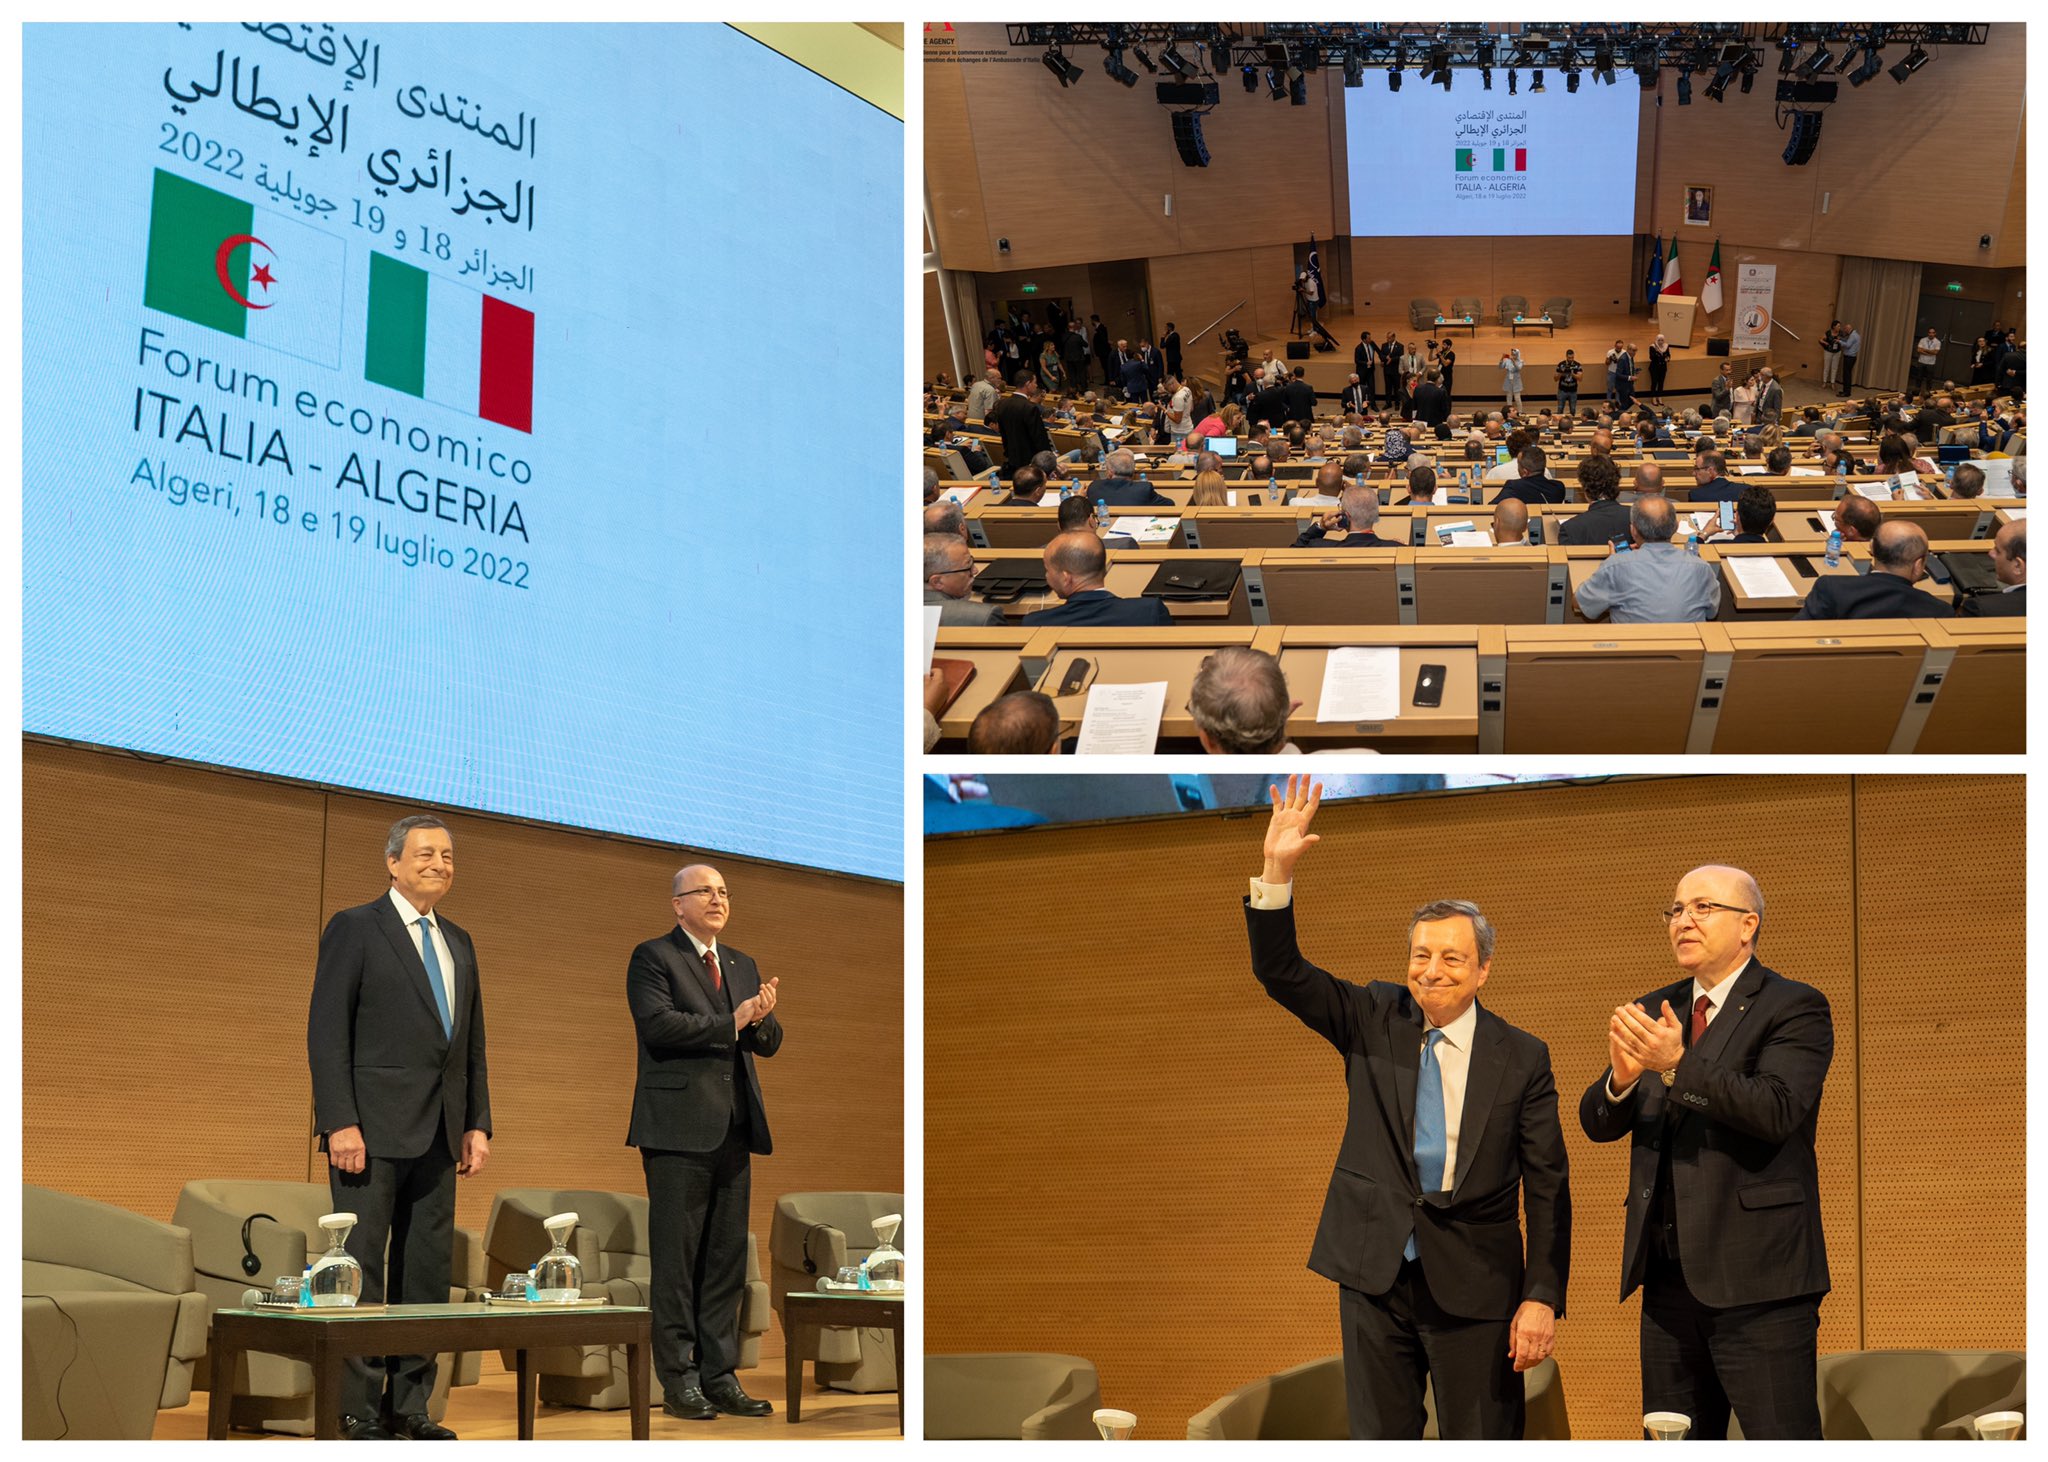 Business Forum Italia - Algeria (18/19 Luglio 2022, Algeri) ICE Algeri